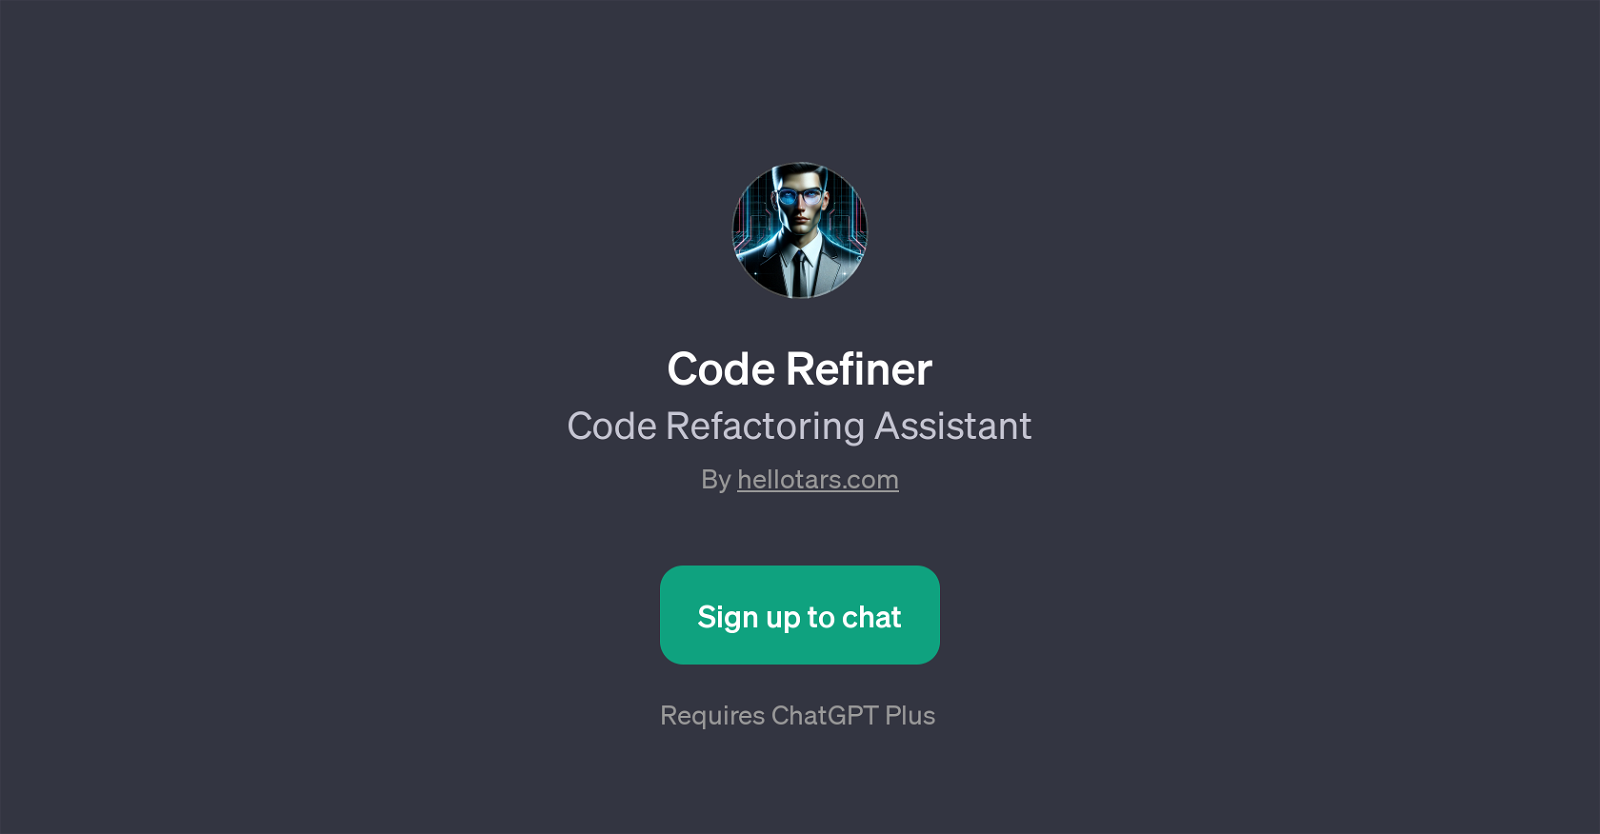 Code Refiner website